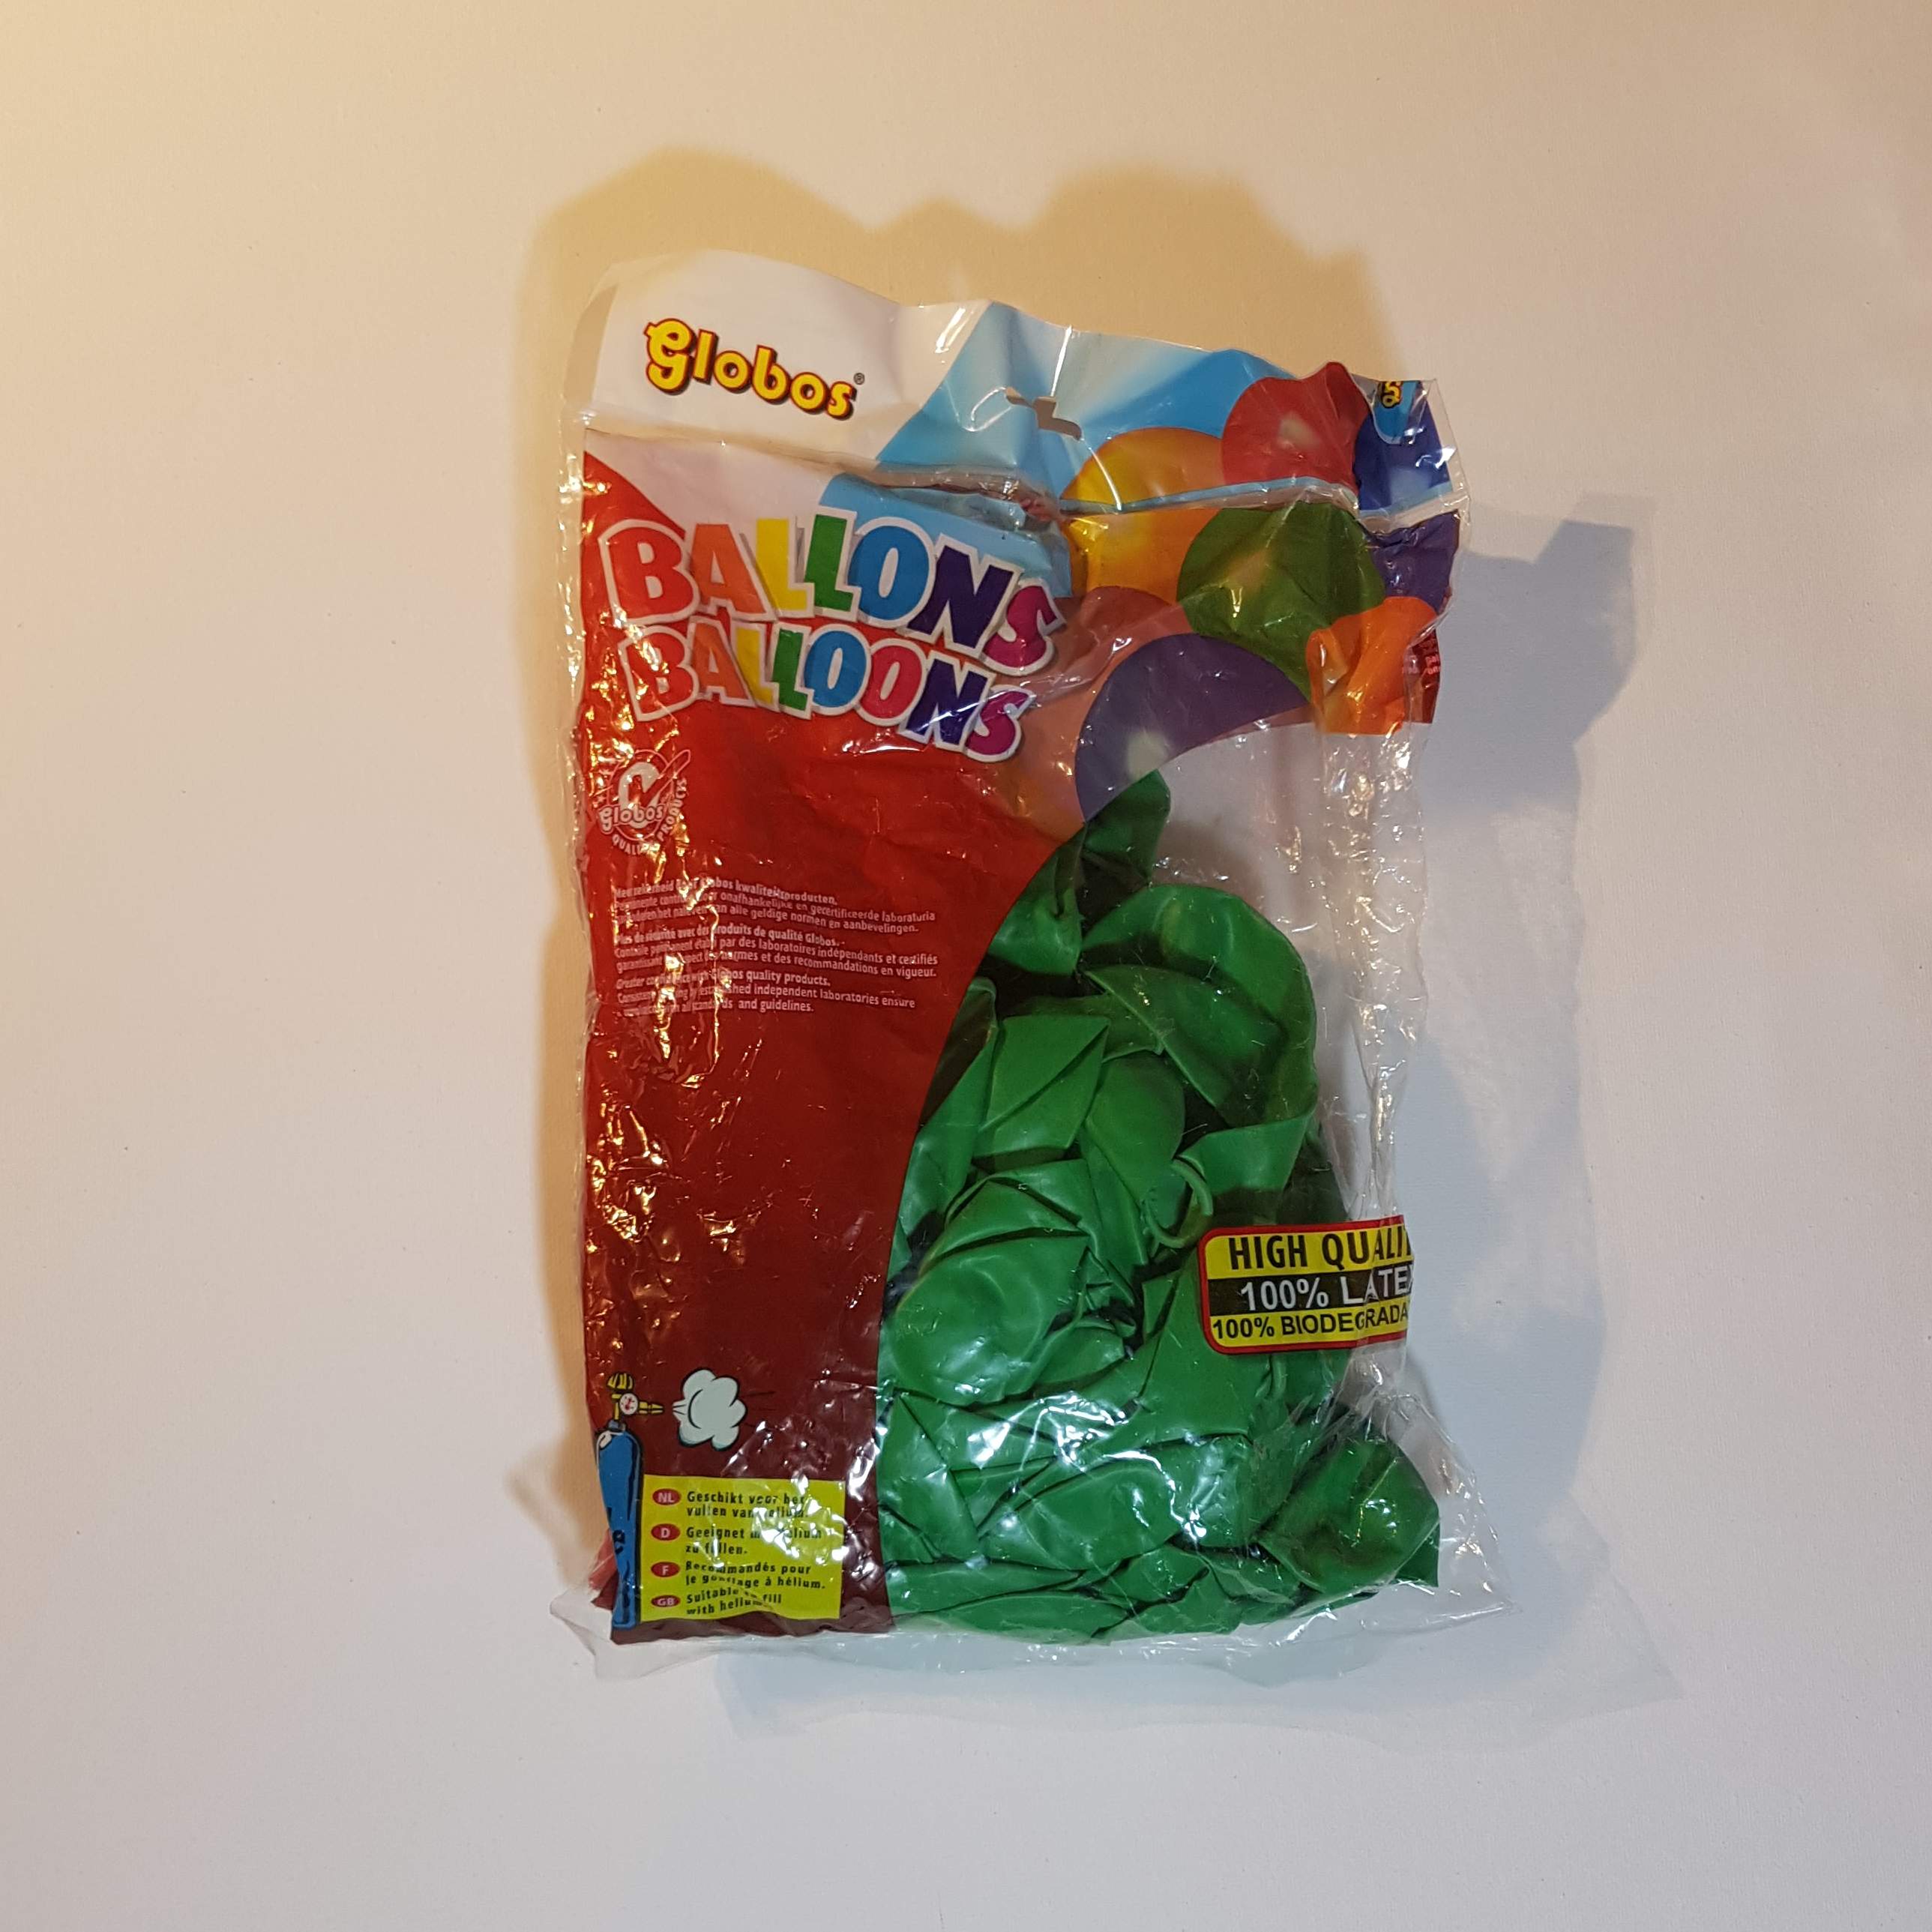 Latex ballonnen groen